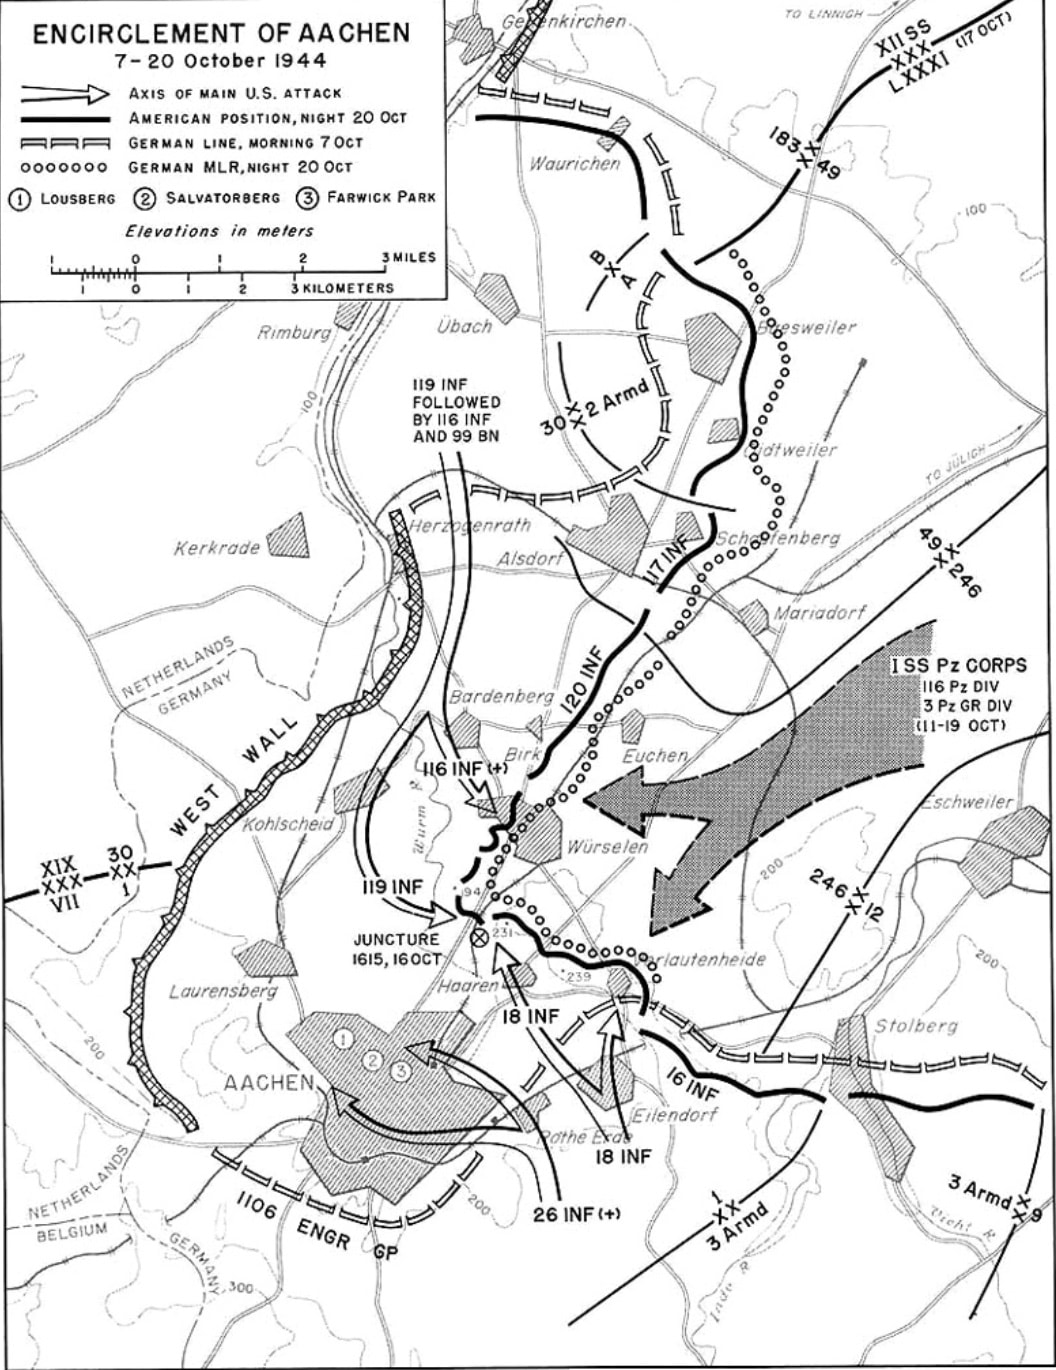 Encirclement of Aachen